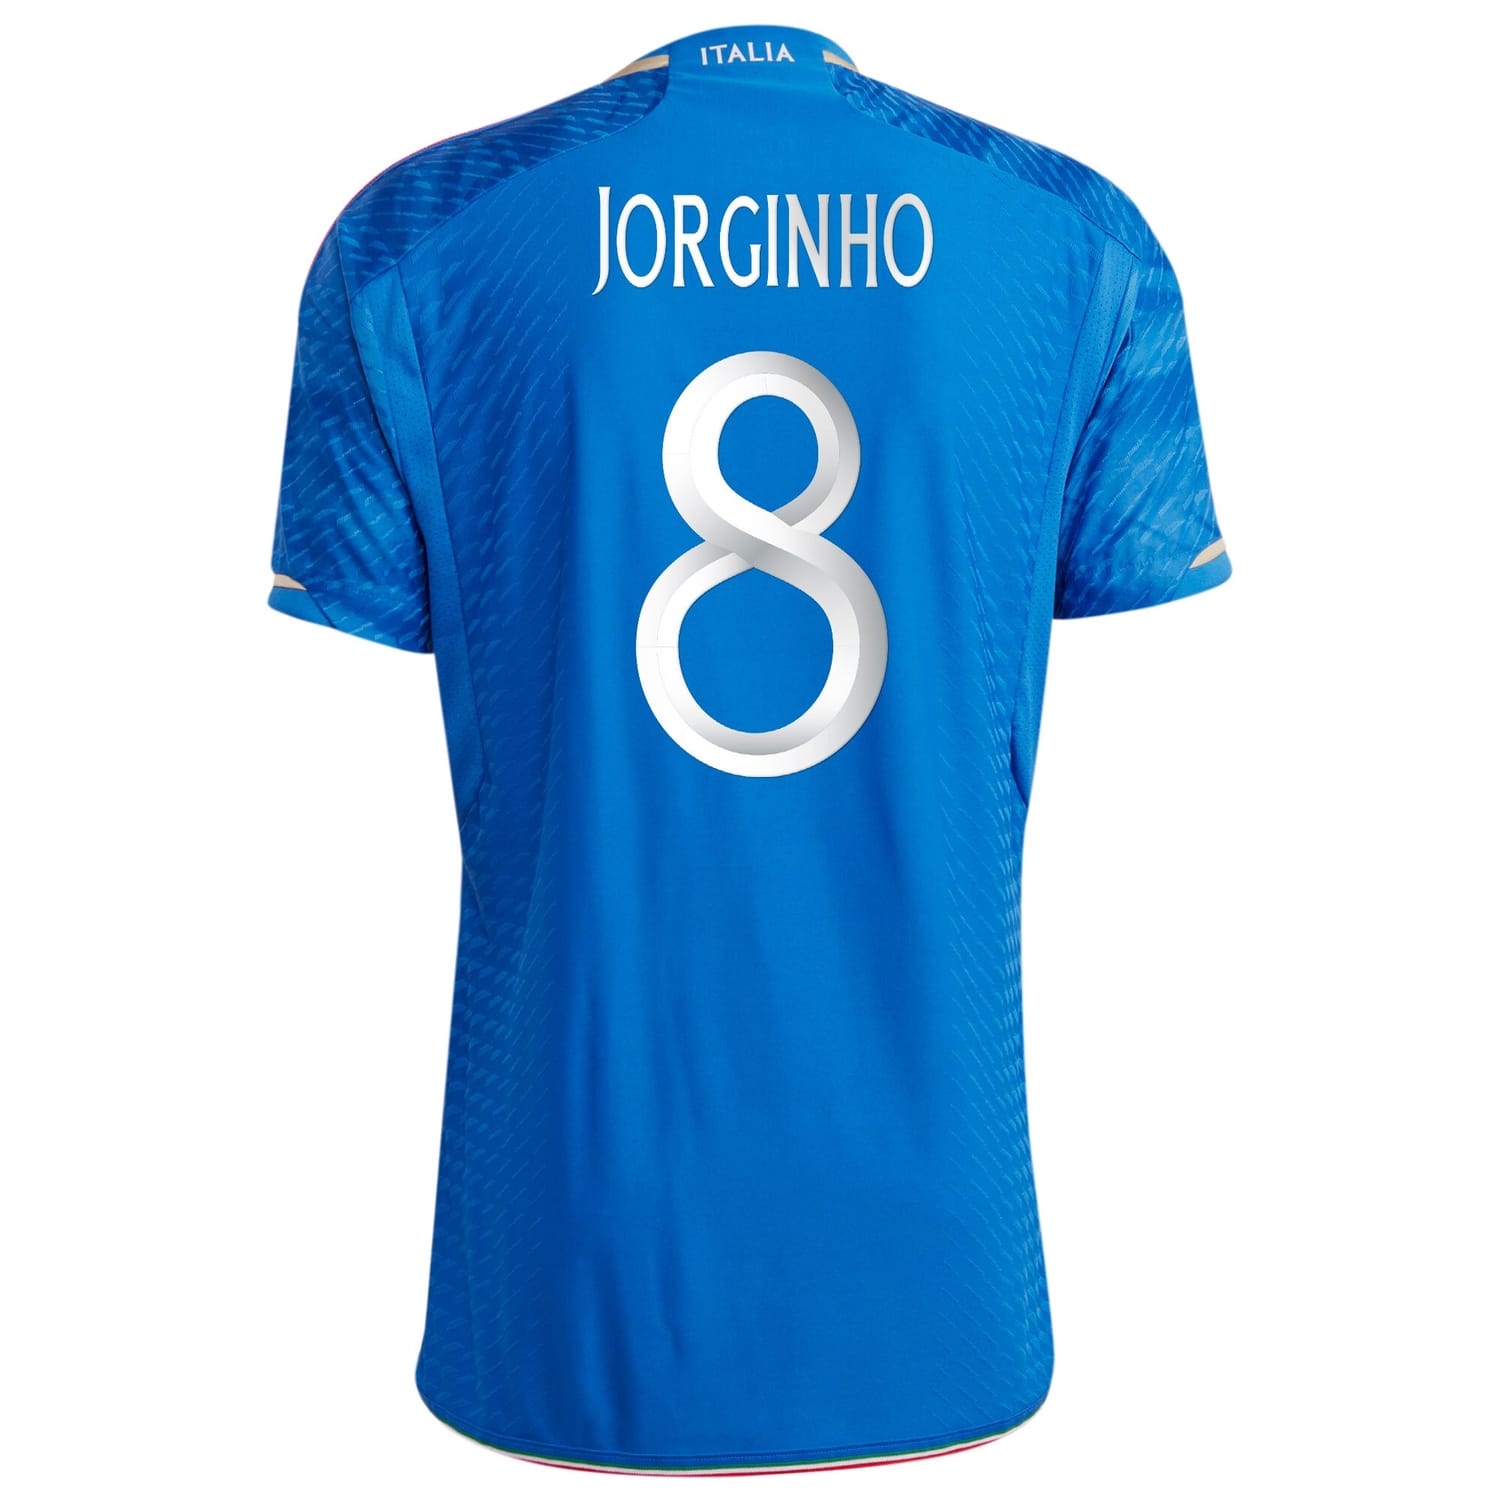 Italy National Team Home Authentic Jersey Shirt Blue 2023-24 player Jorginho printing for Men